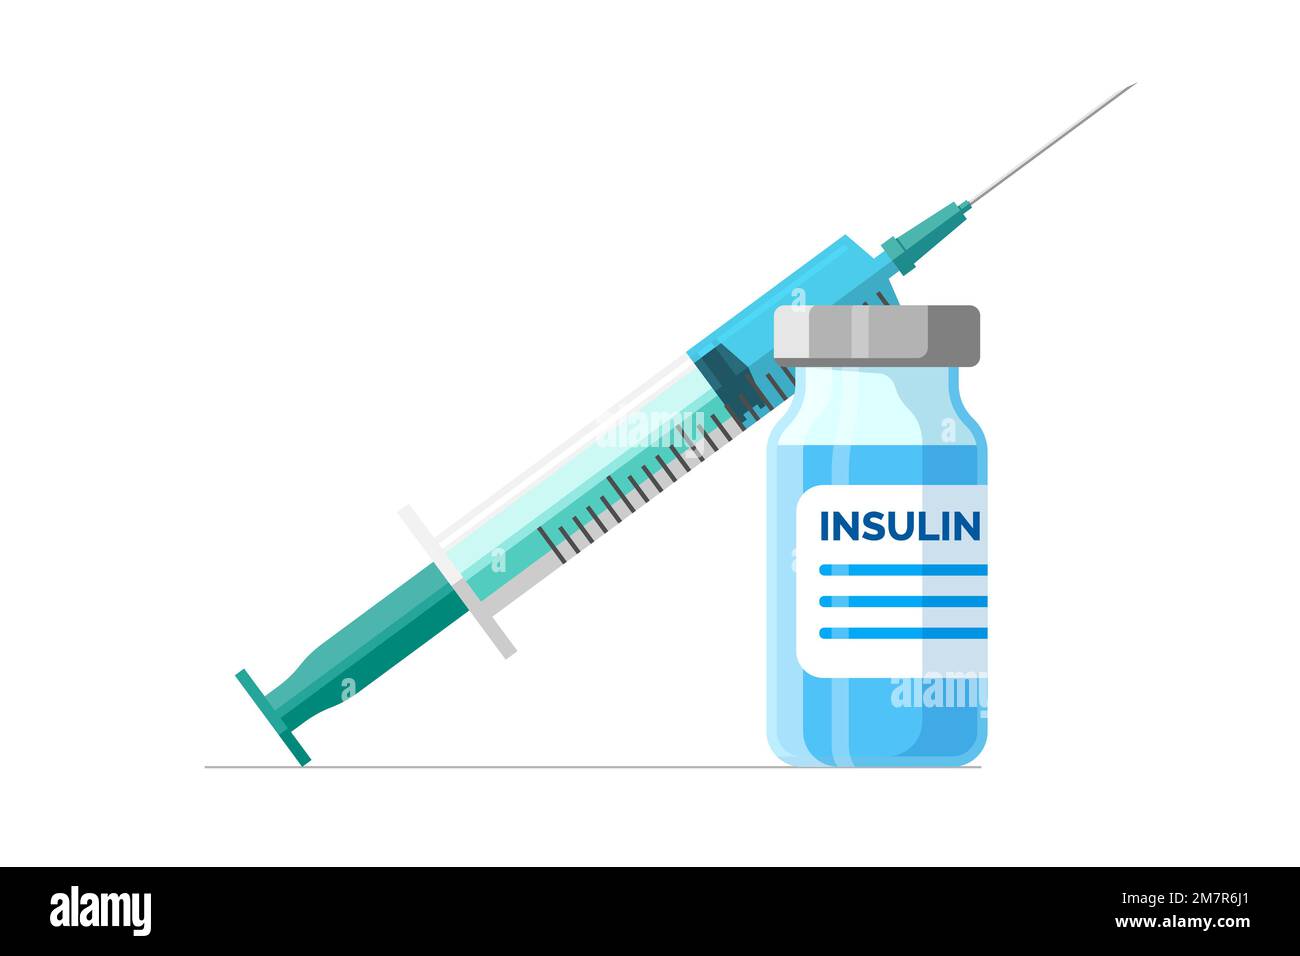 Insulinampulle mit Injektionsspritze. Diabeteskontrollkonzept. Die medizinische Spritze für Diabetiker. Arzneimittelflasche für Menschen mit hohem Blutzucker Stock Vektor